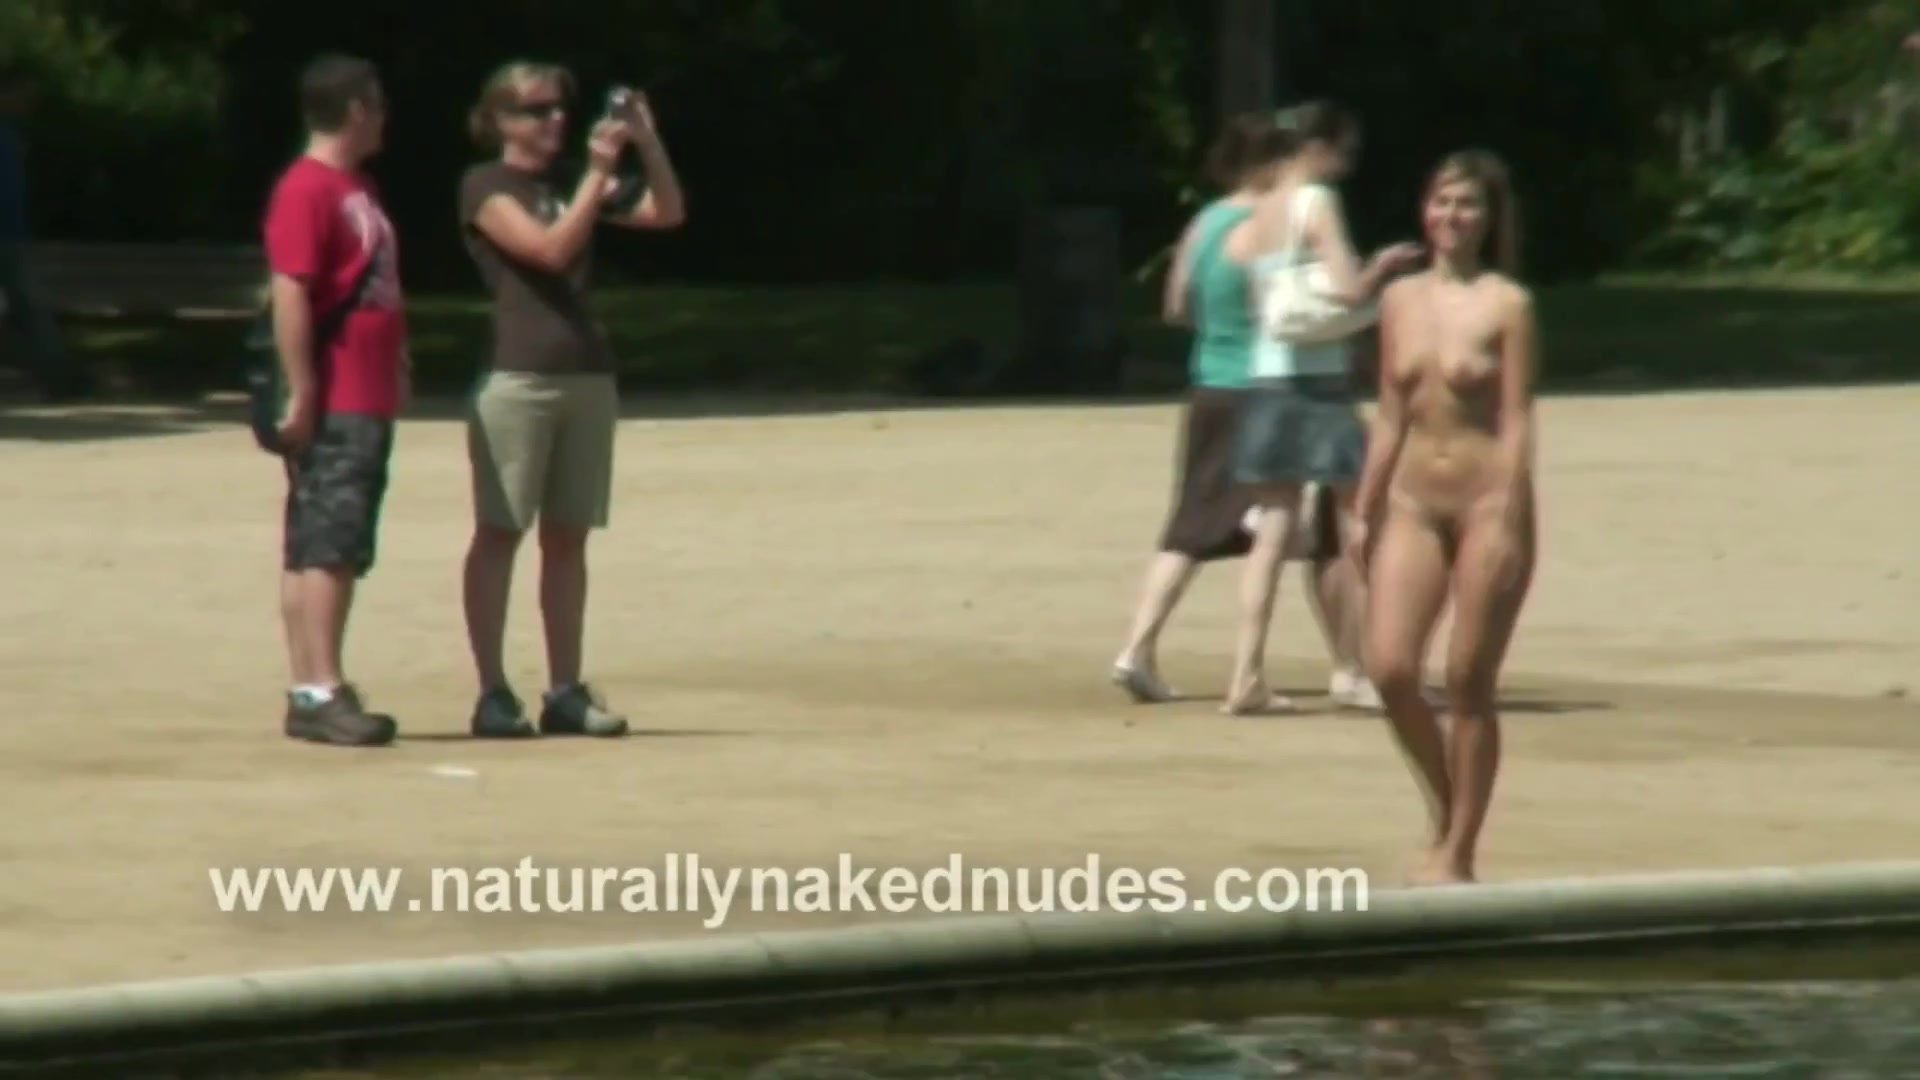 allan schmitz share accidental nudity photos photos